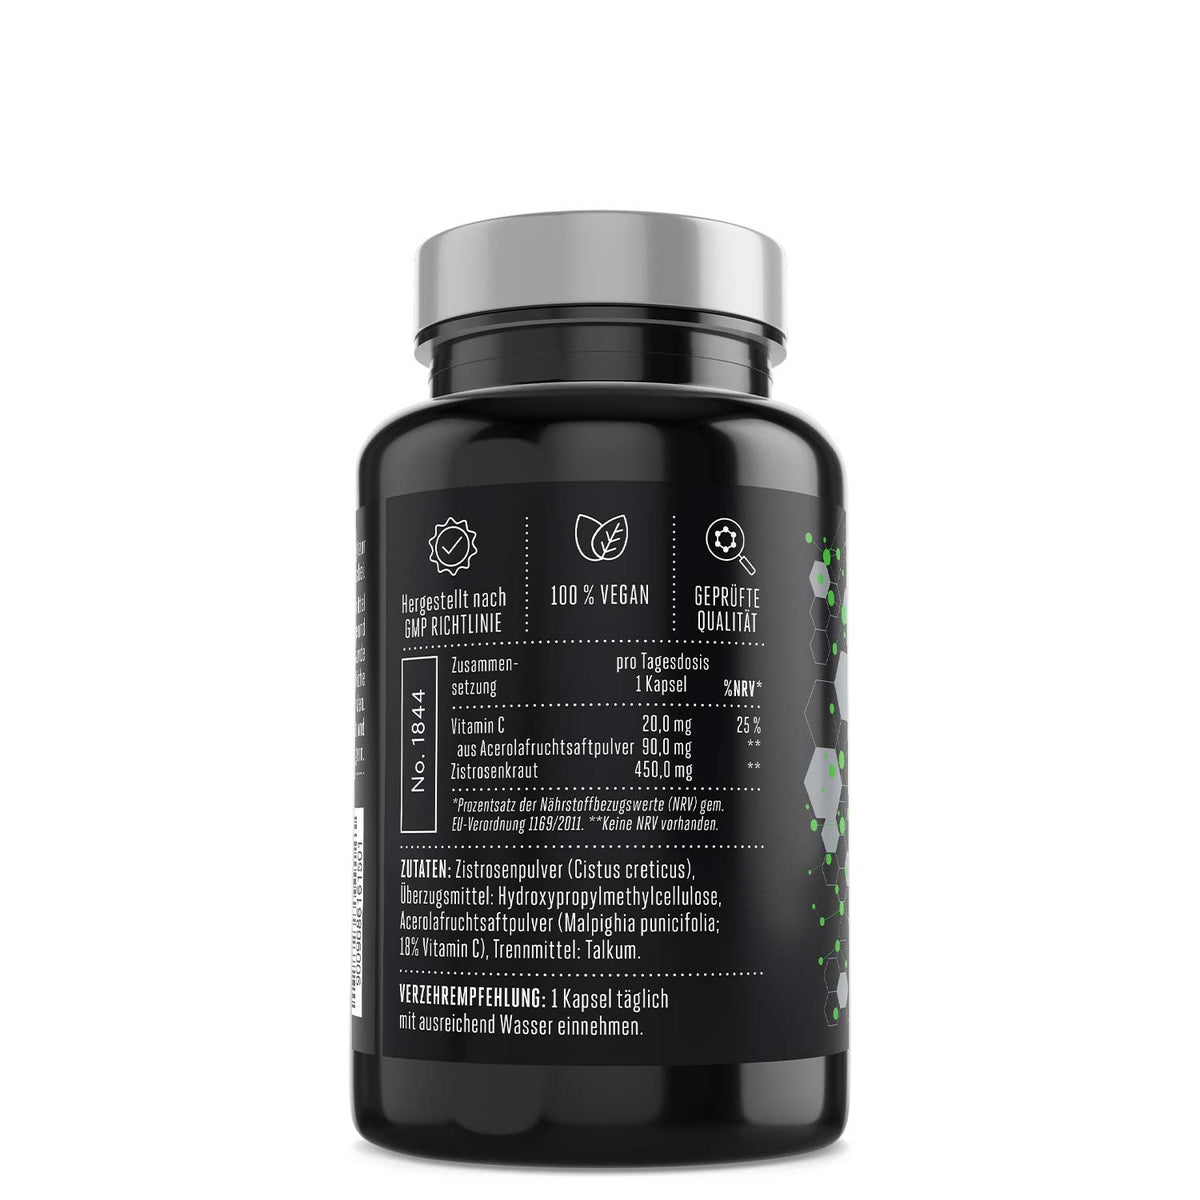 Phantom Vitamin C Supplement für ein starkes Immunsystem im Kampfsport mit hochwertigen Inhaltsstoffen.